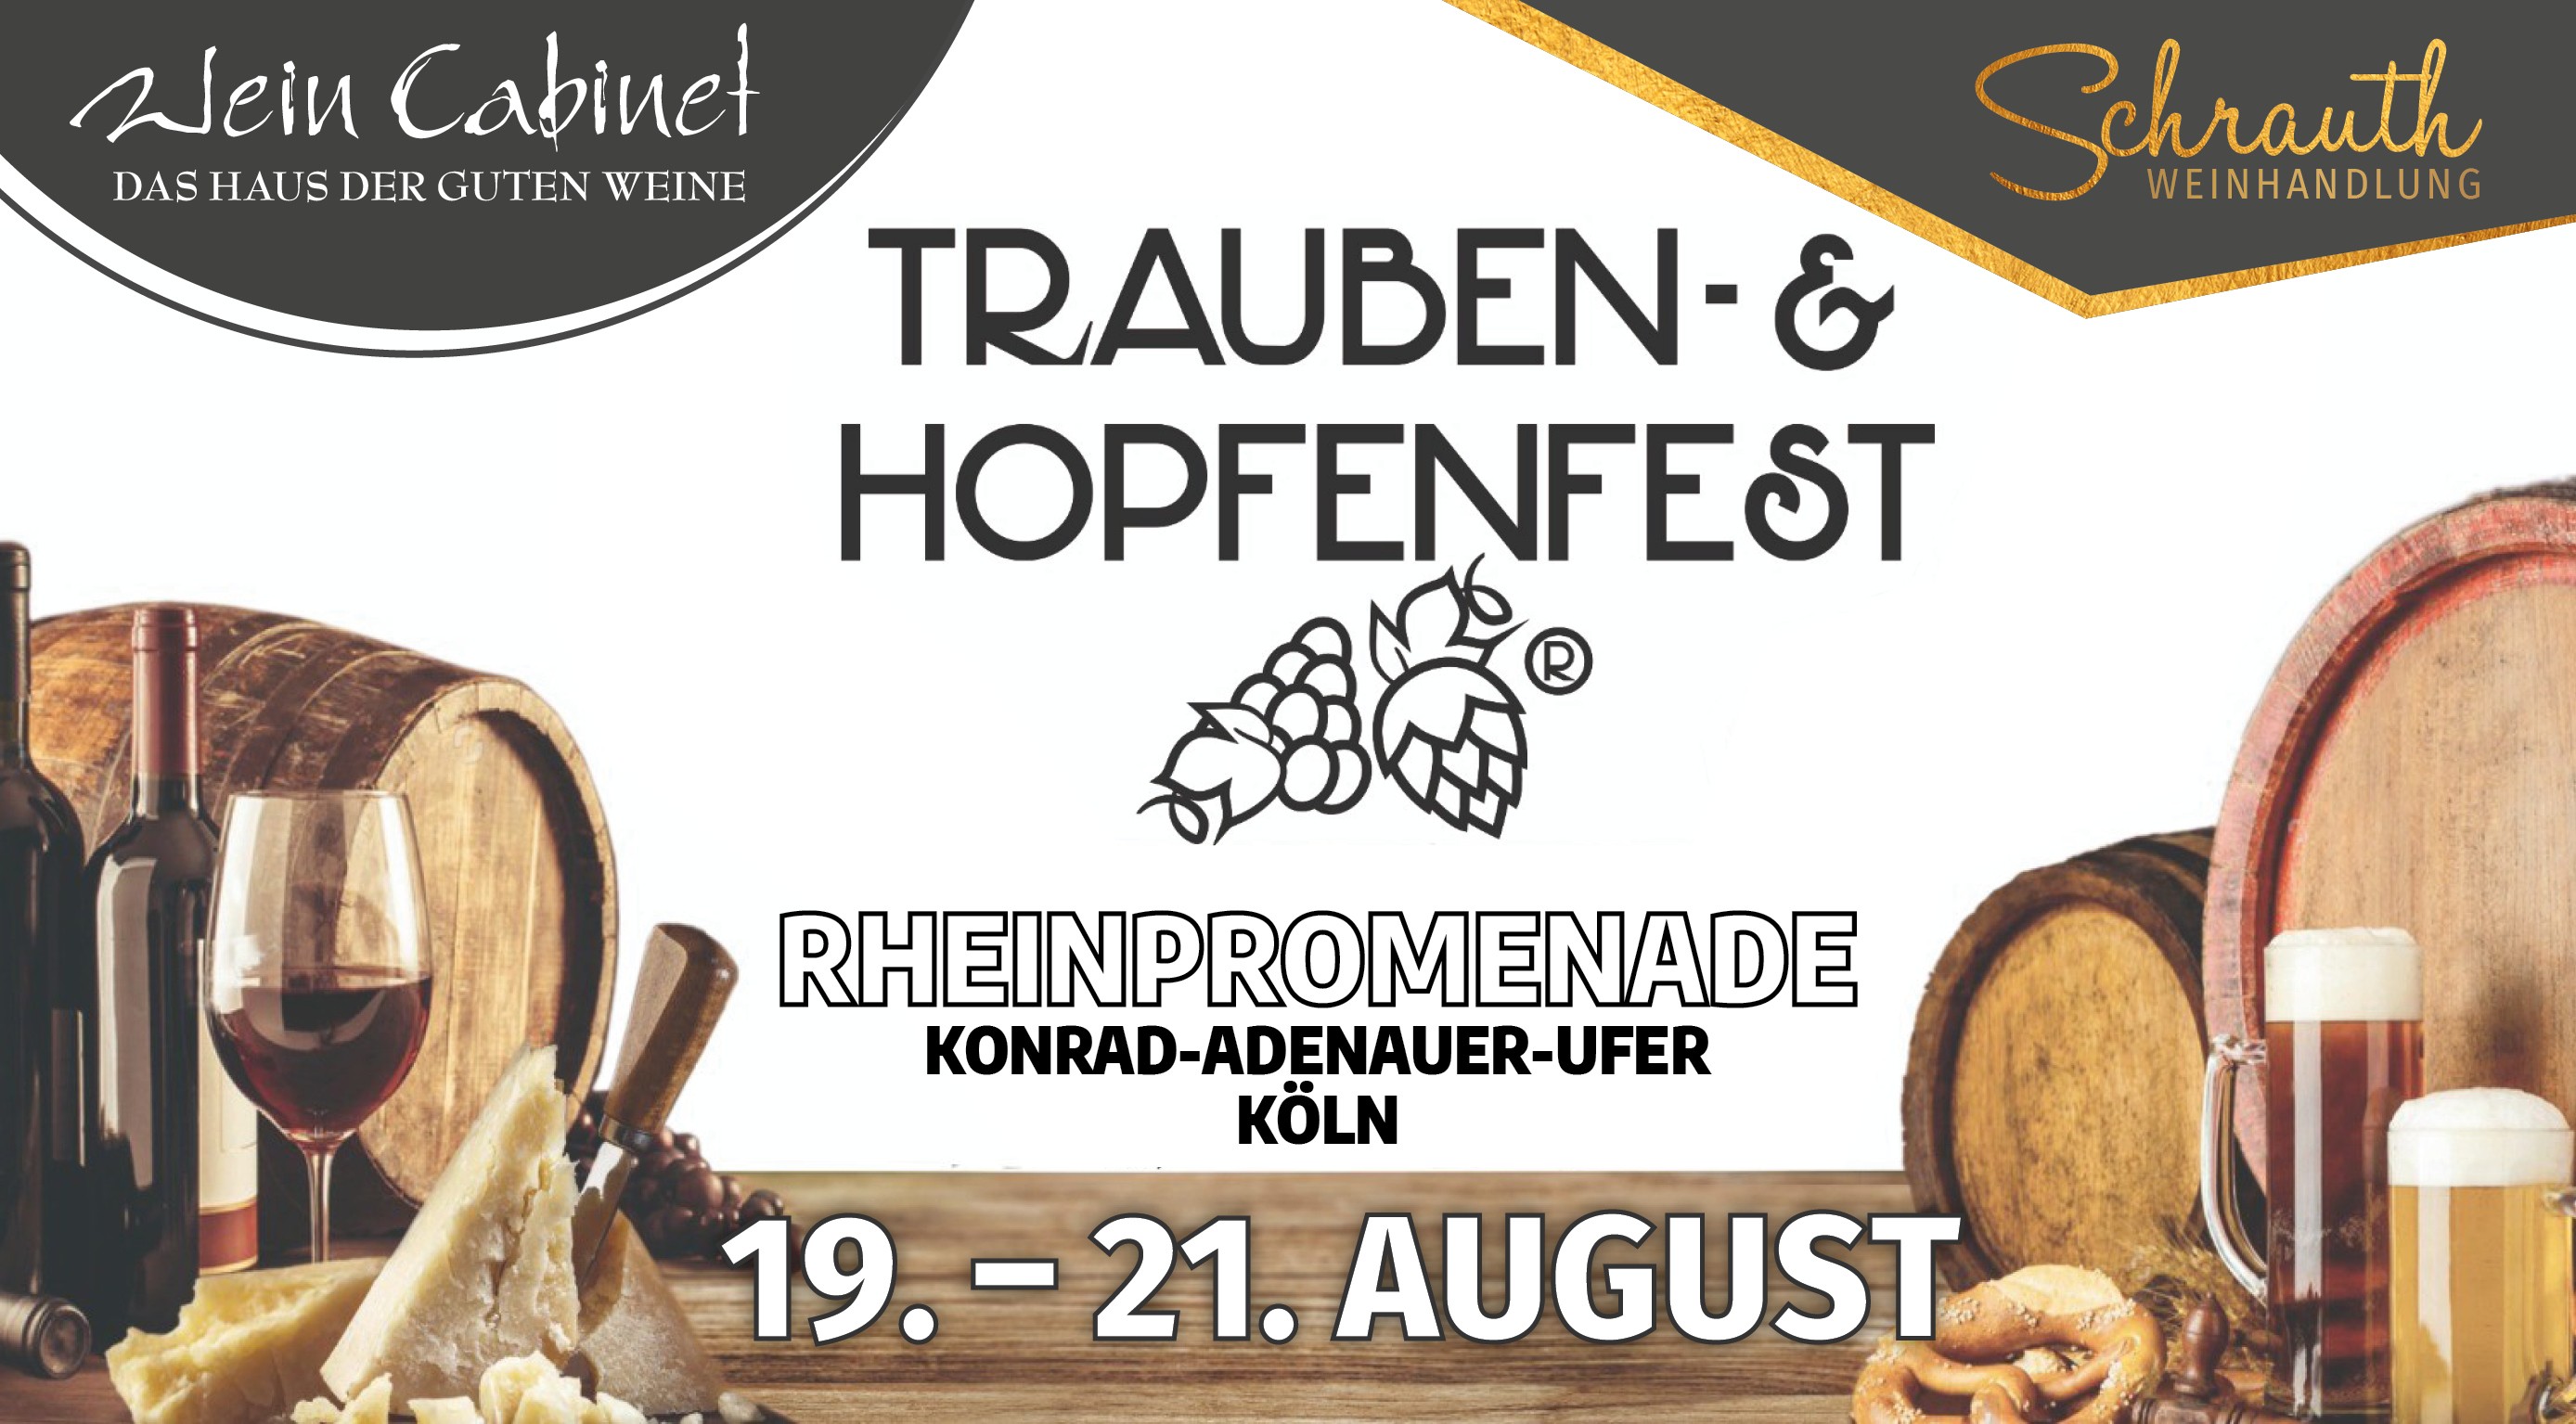 2. Kölner Trauben- & Hopfenfest, Wein Cabinet Briem, Köln